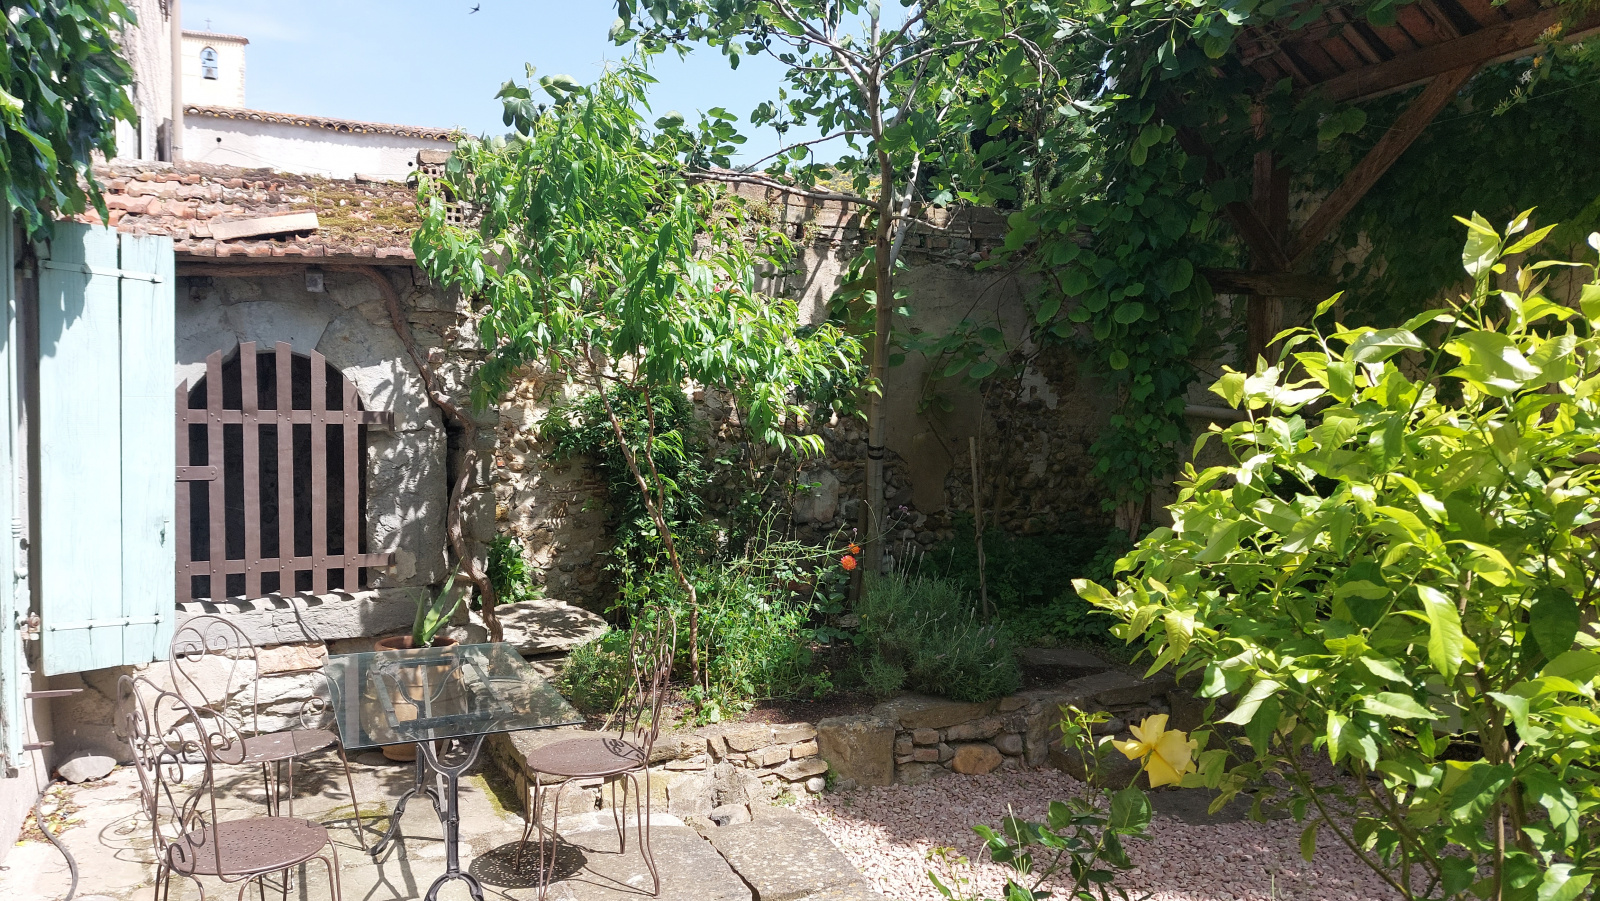 Renovated Villa House With Courtyard Garden